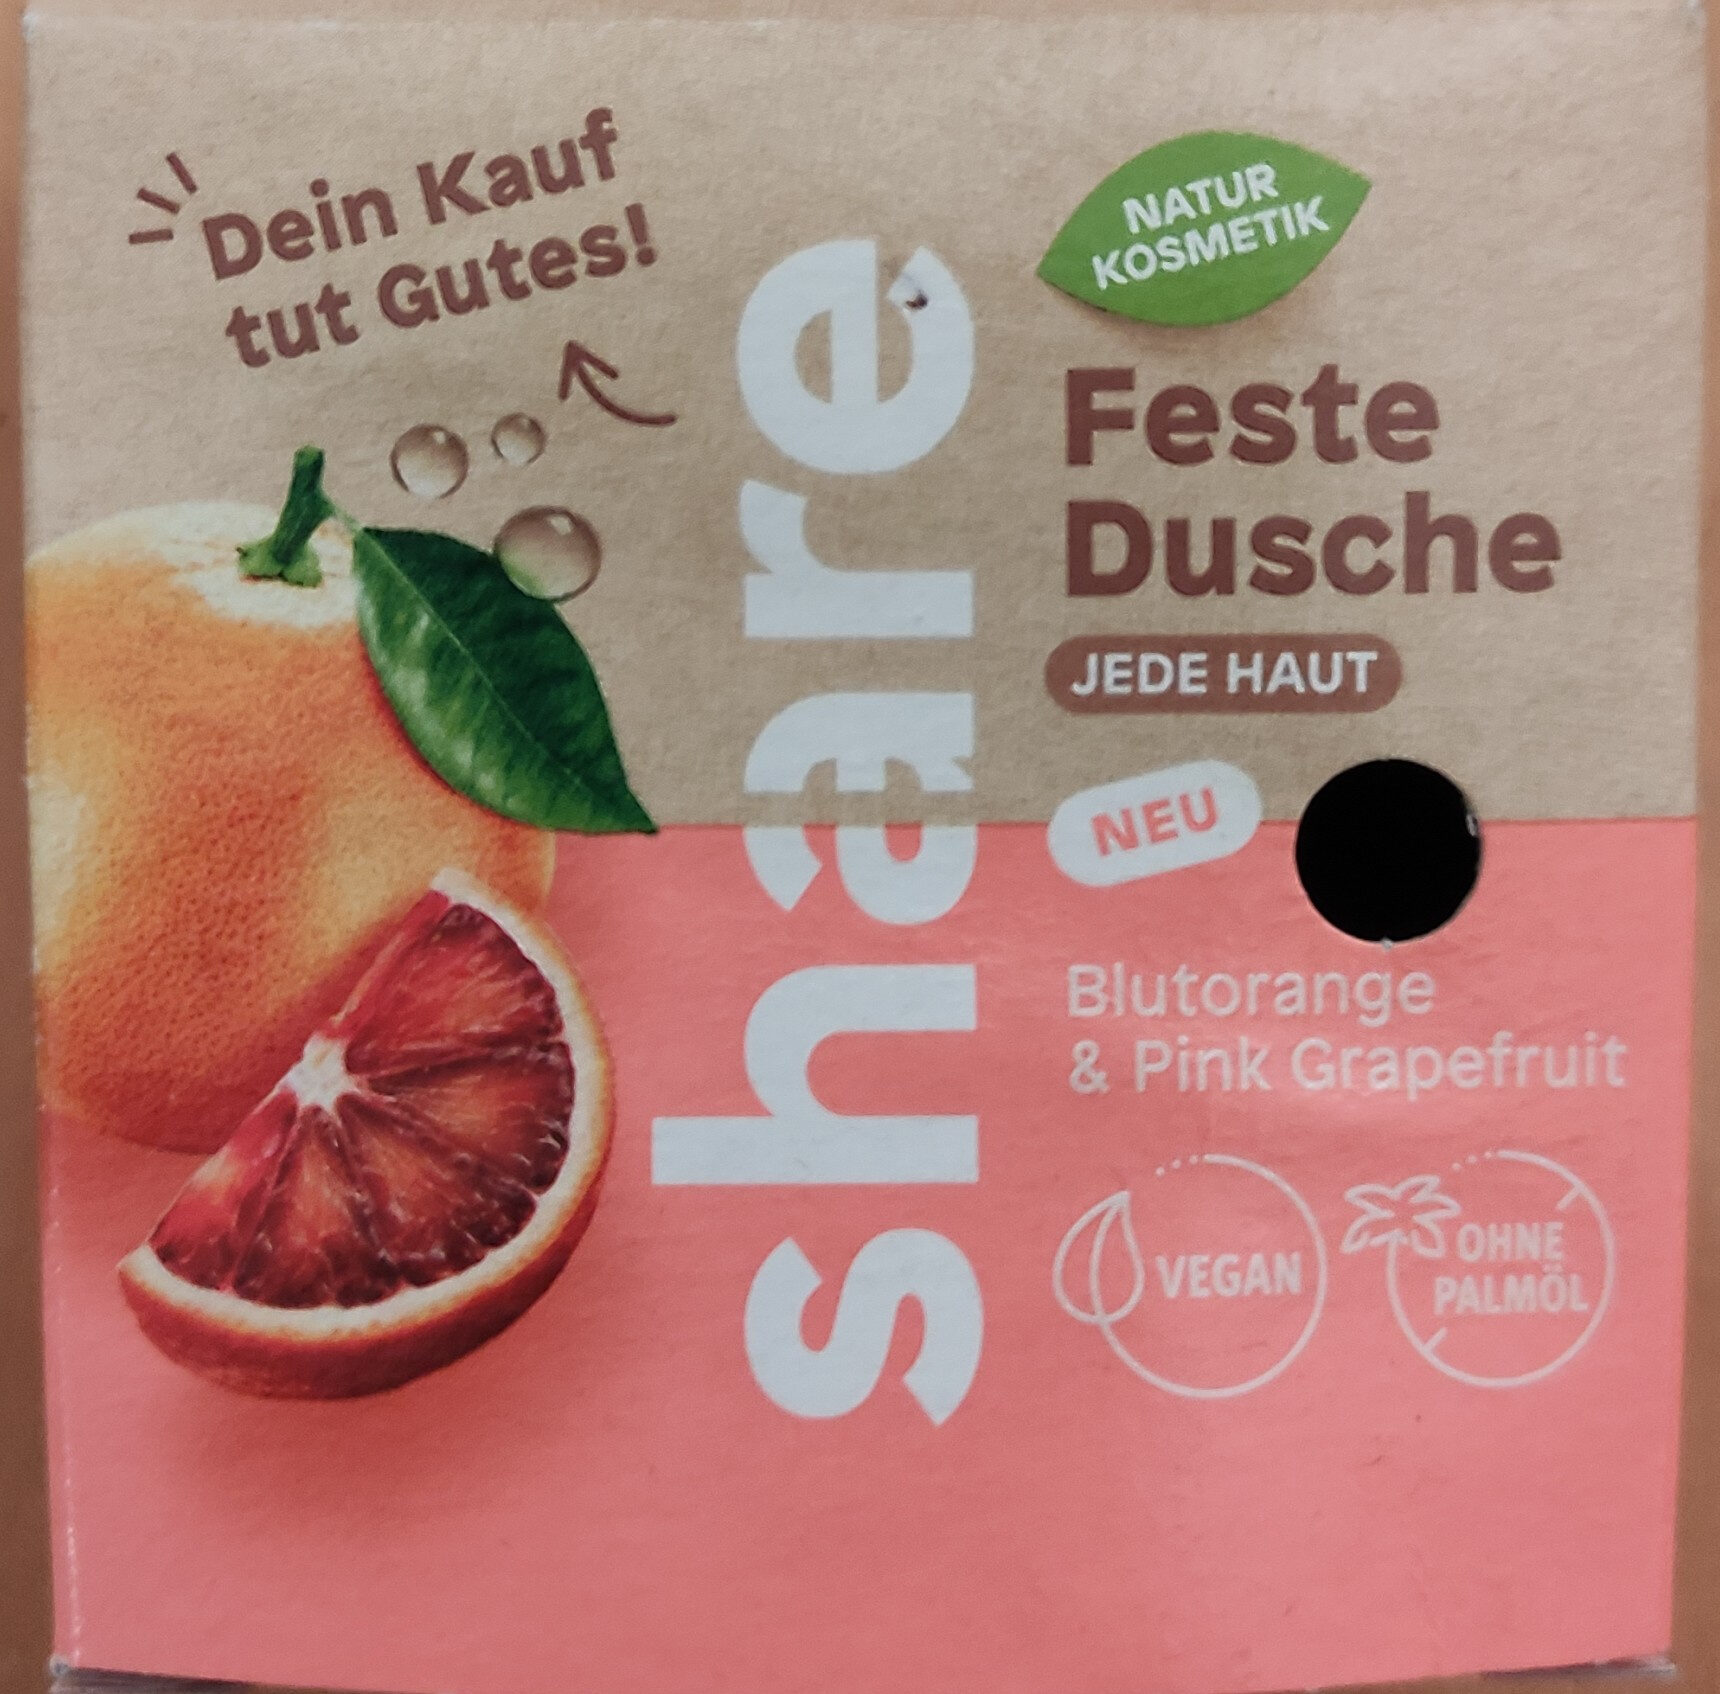 Feste Dusche Blutorange & Grapefruit - Product - de